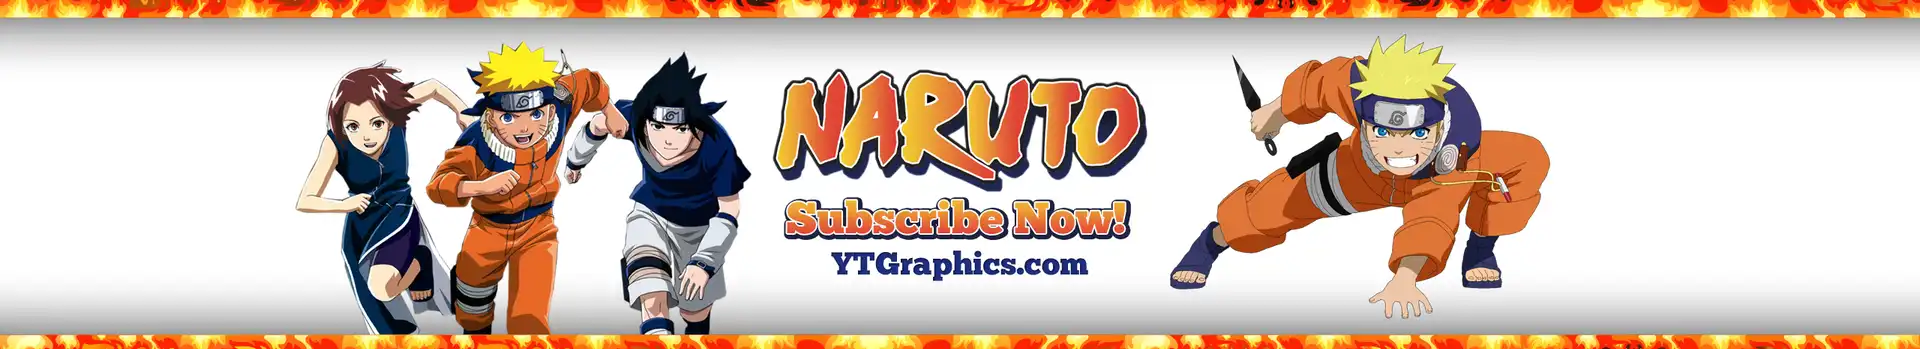 Naruto preview